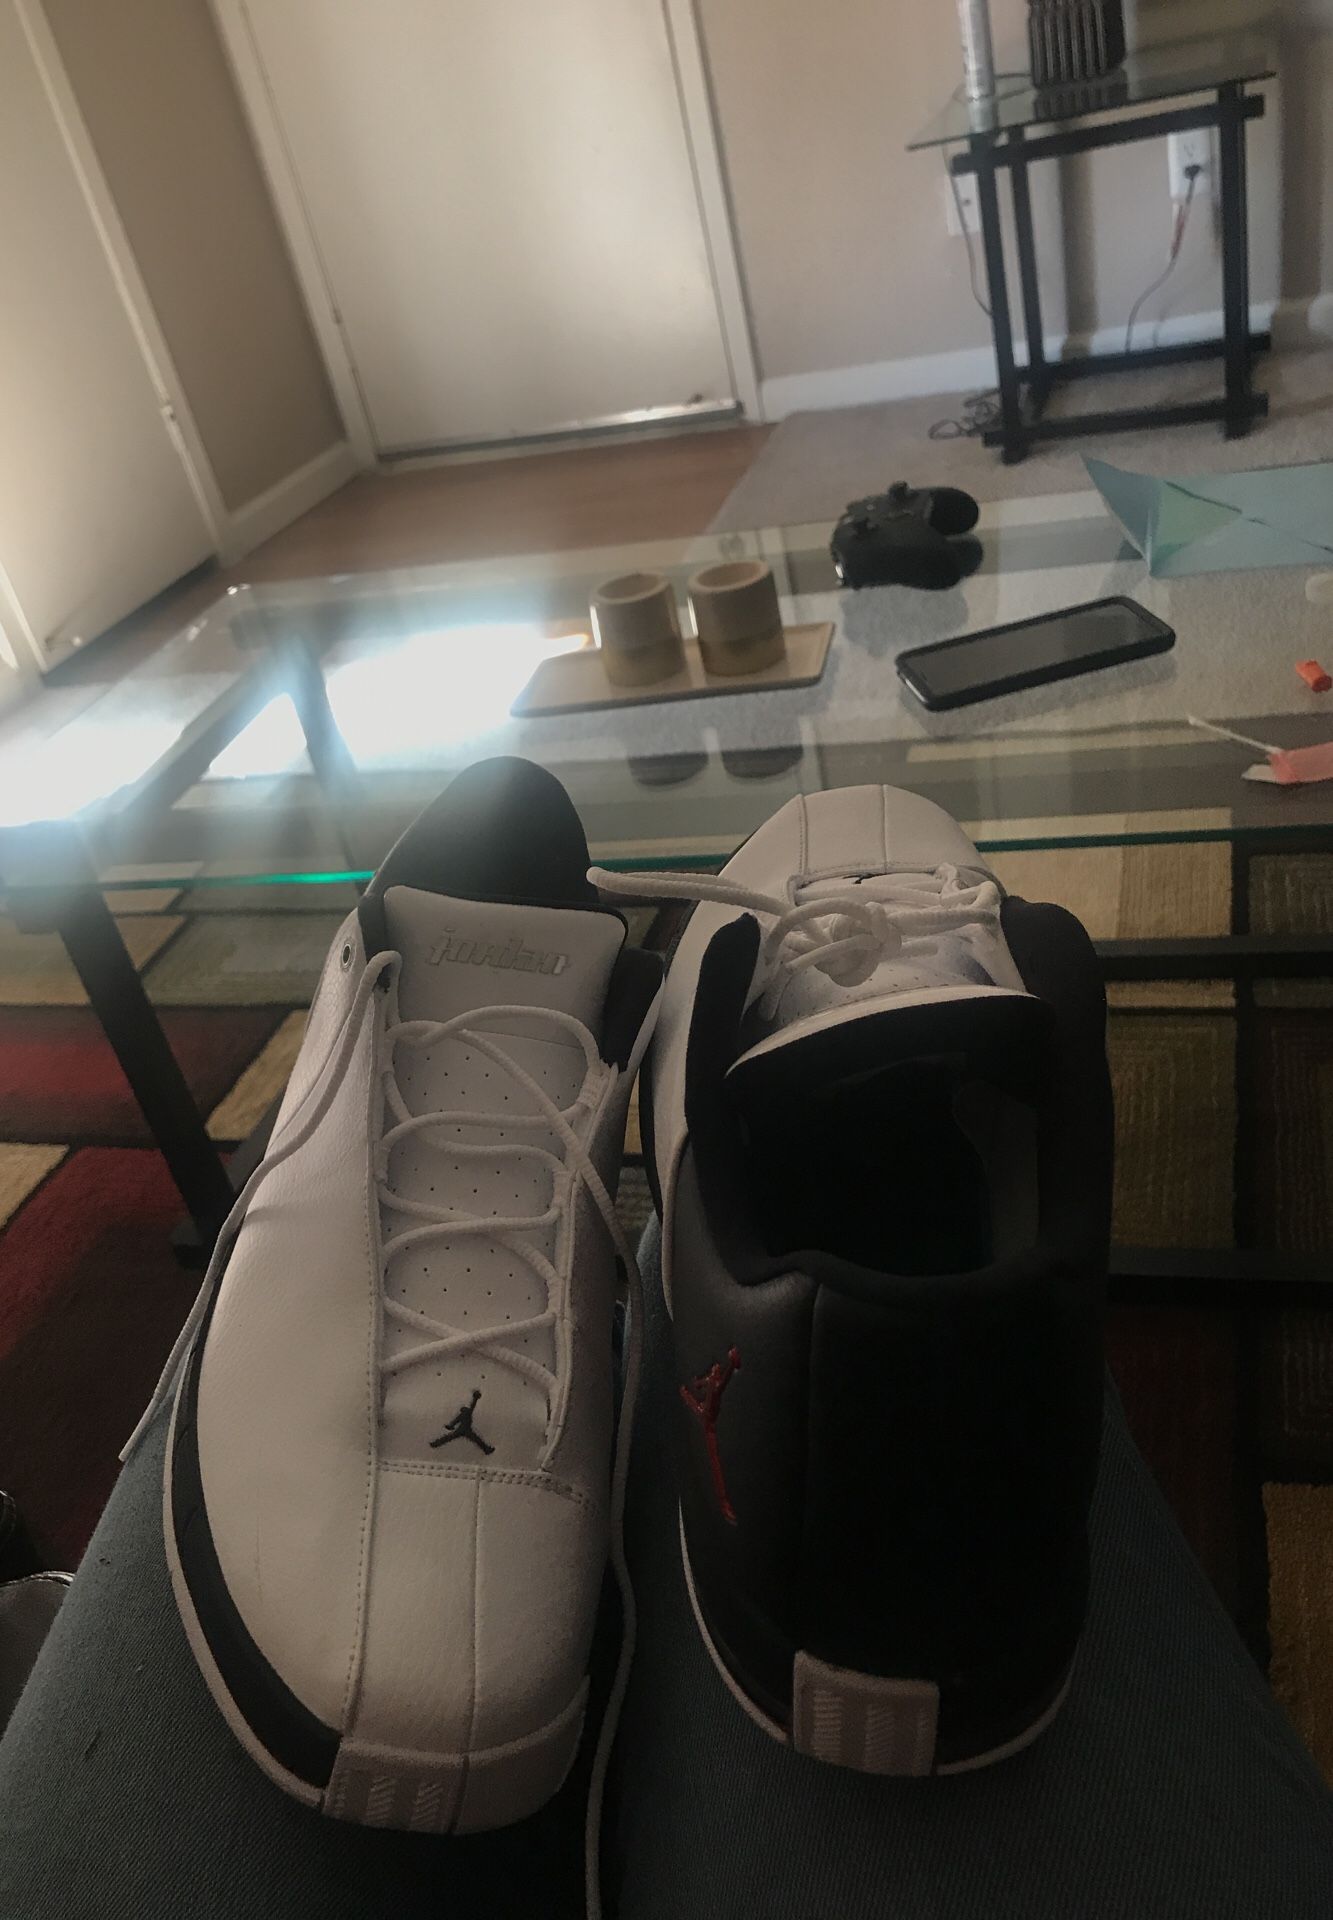 Jordan TE 2 Air Shoes - size 13